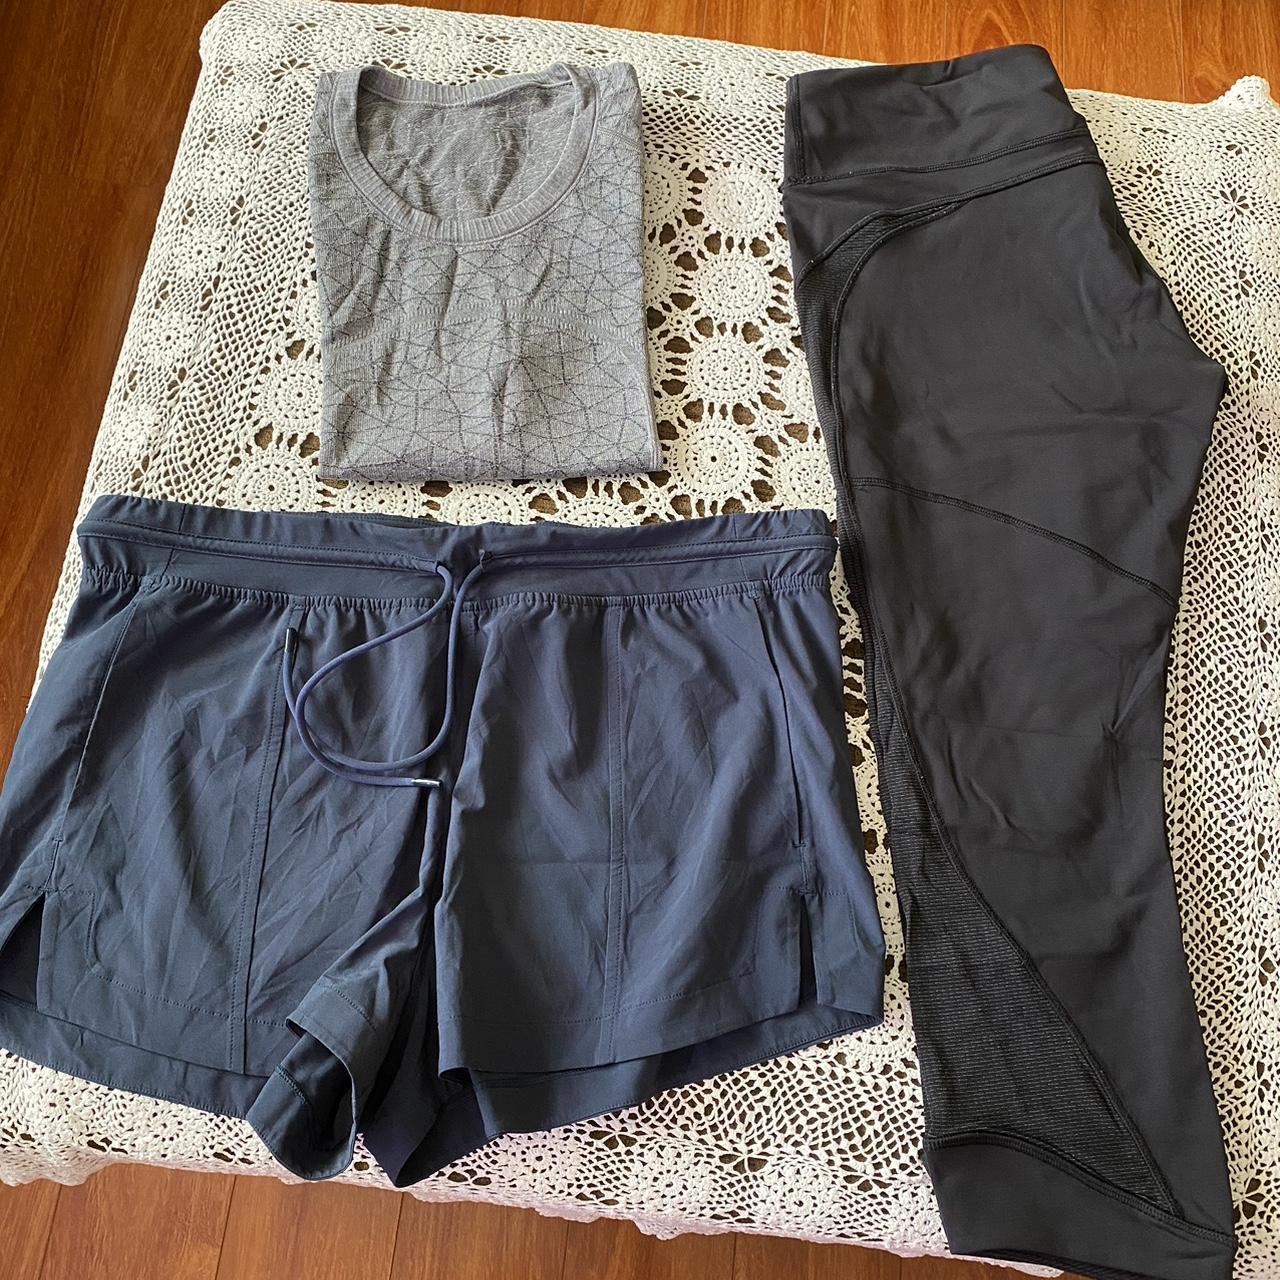 AS NEW 3 items of Lululemon T-shirt / Shorts / Crop - Depop